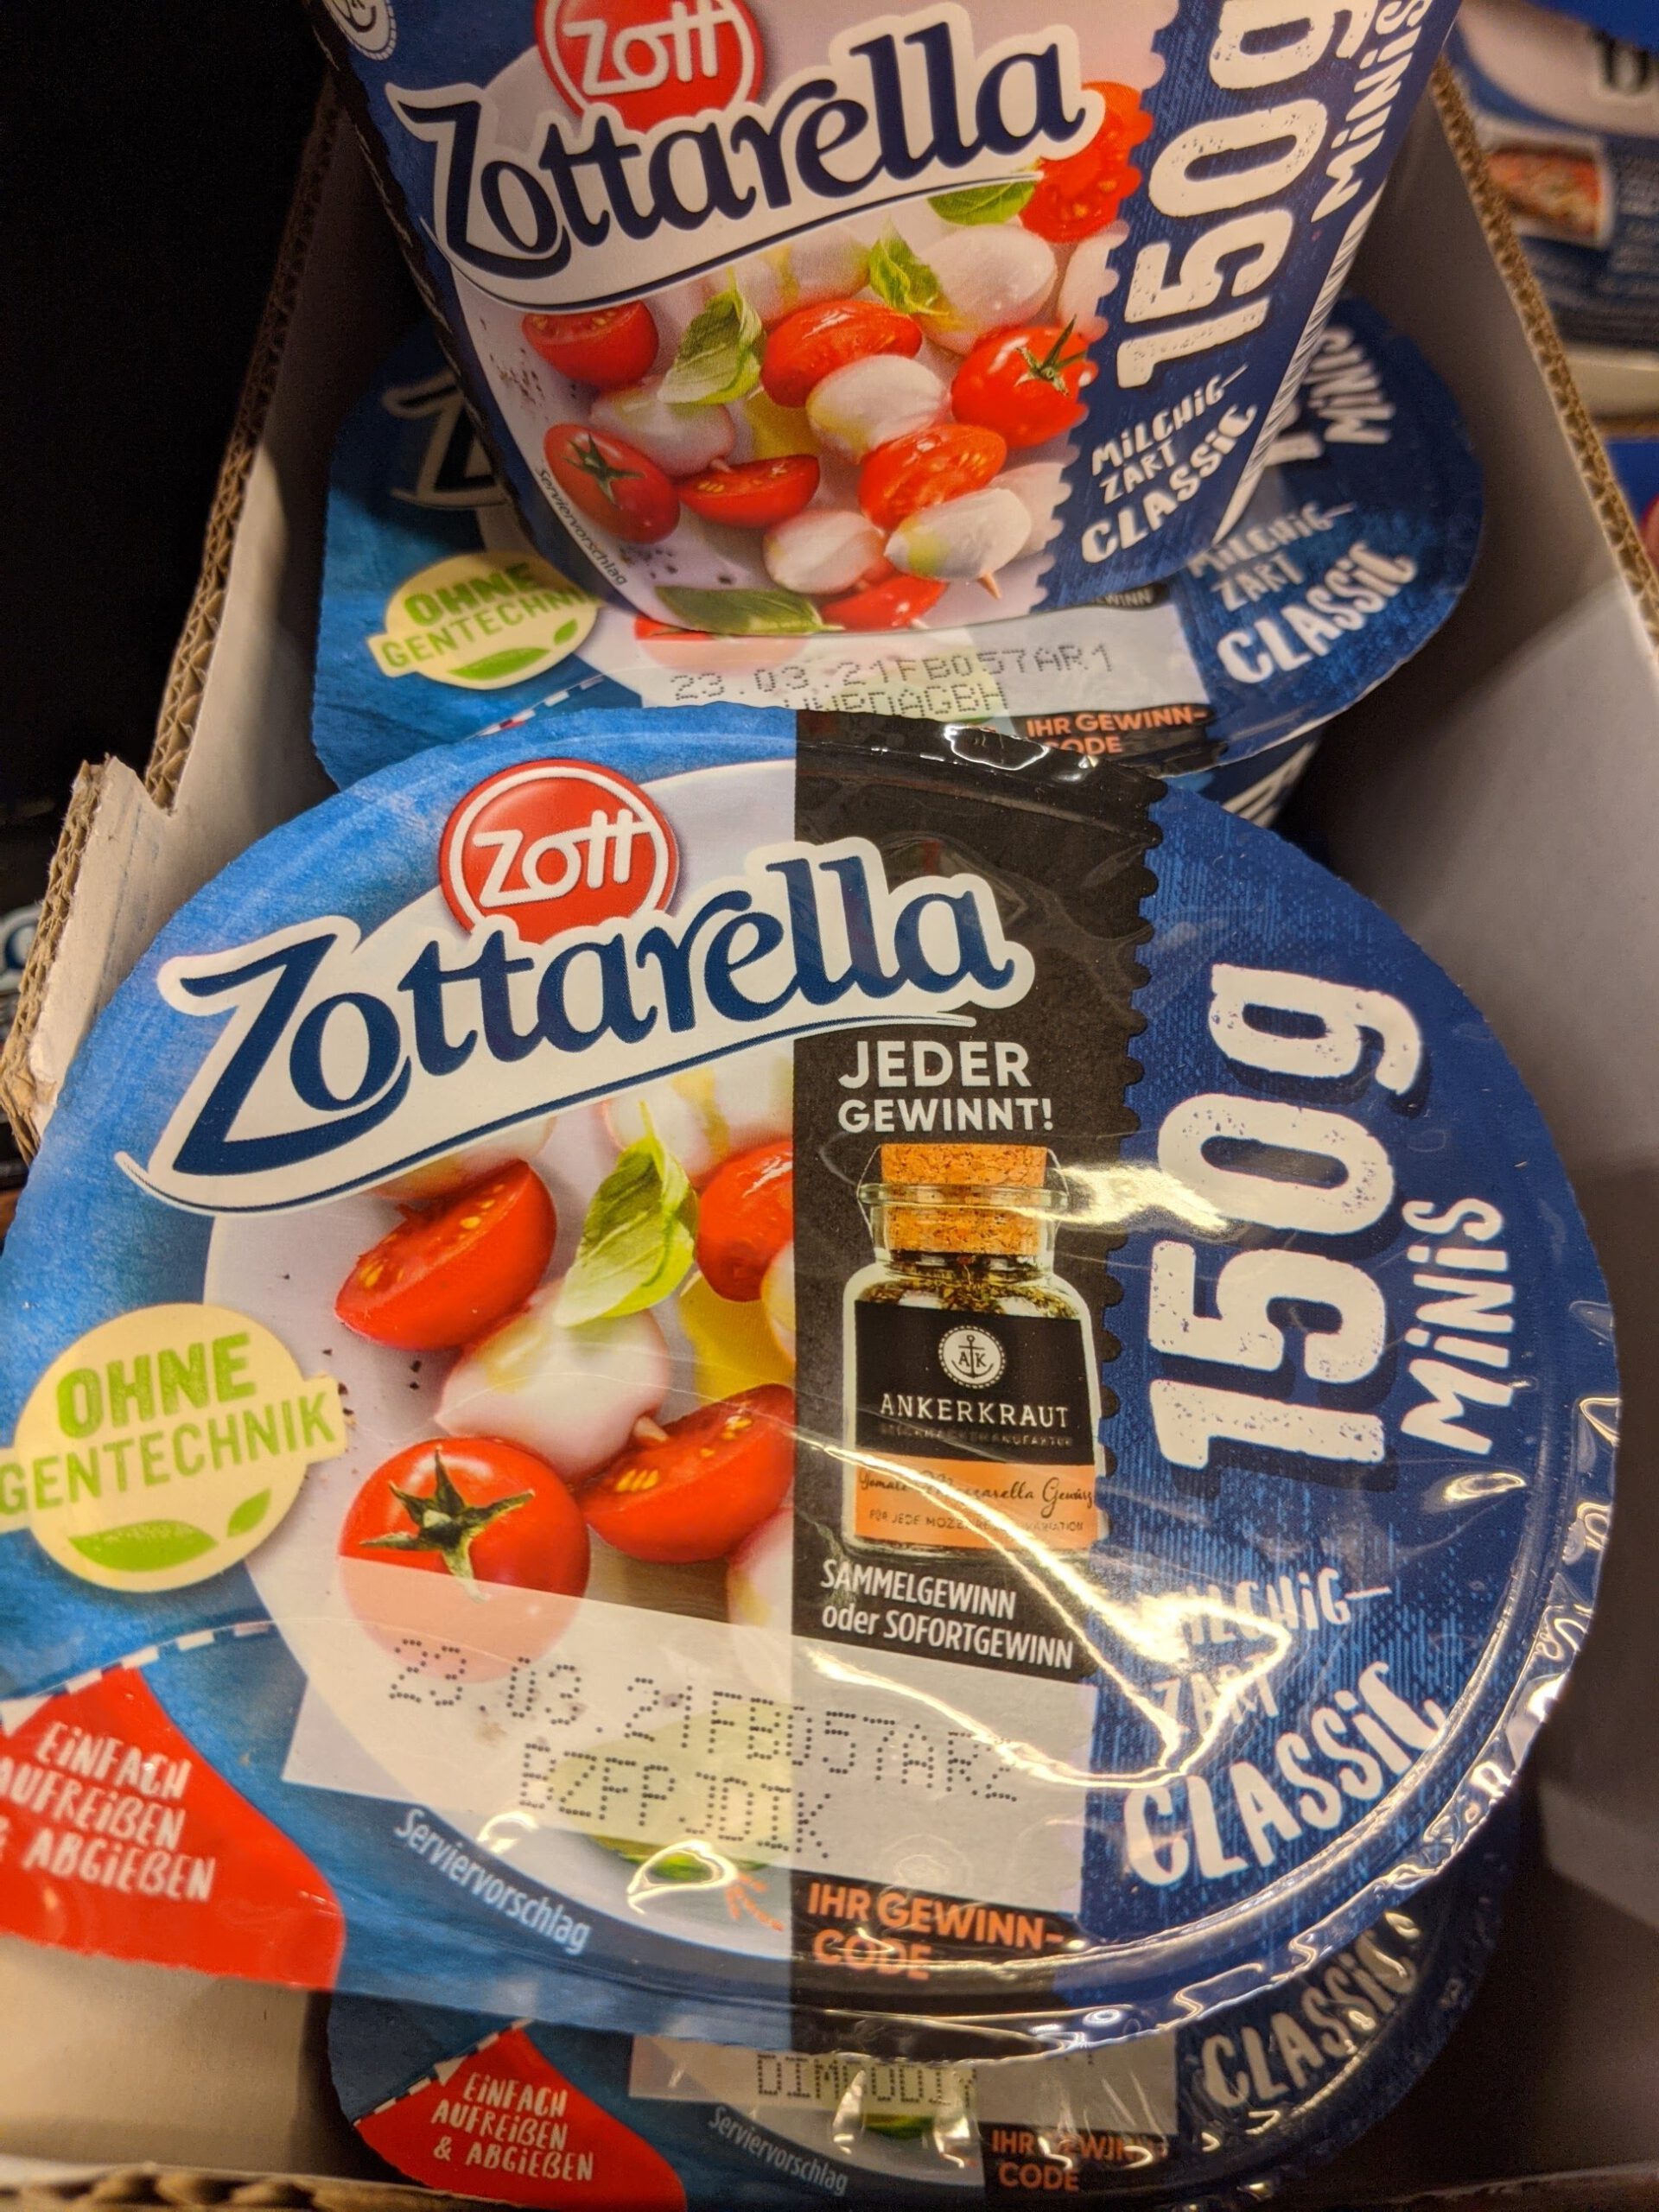 Zottarella: Ankerkraut-Gewinnspiel - Sammelgewinn oder Sofortgewinn?